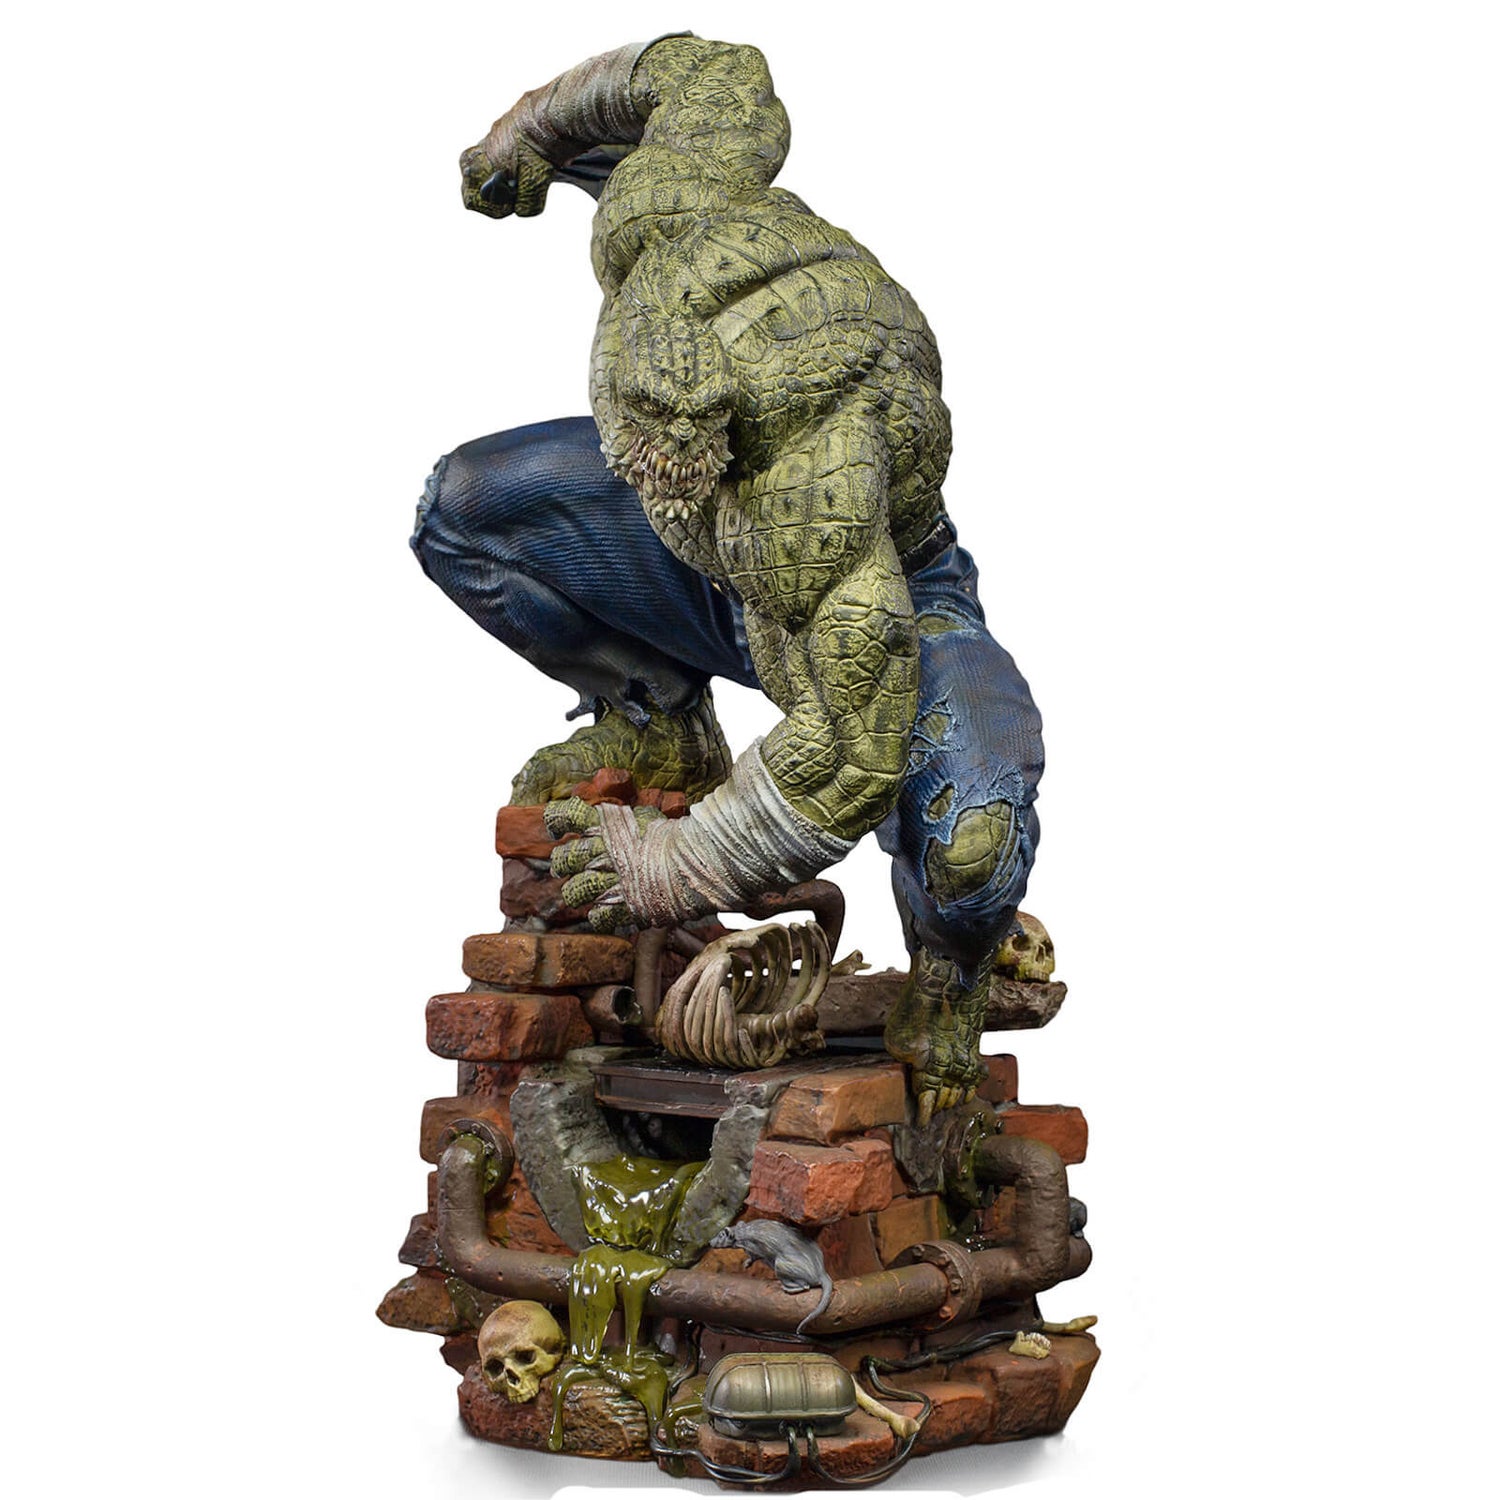 Iron Studios DC Comics Killer Croc 1/10 Statue - Exclusive